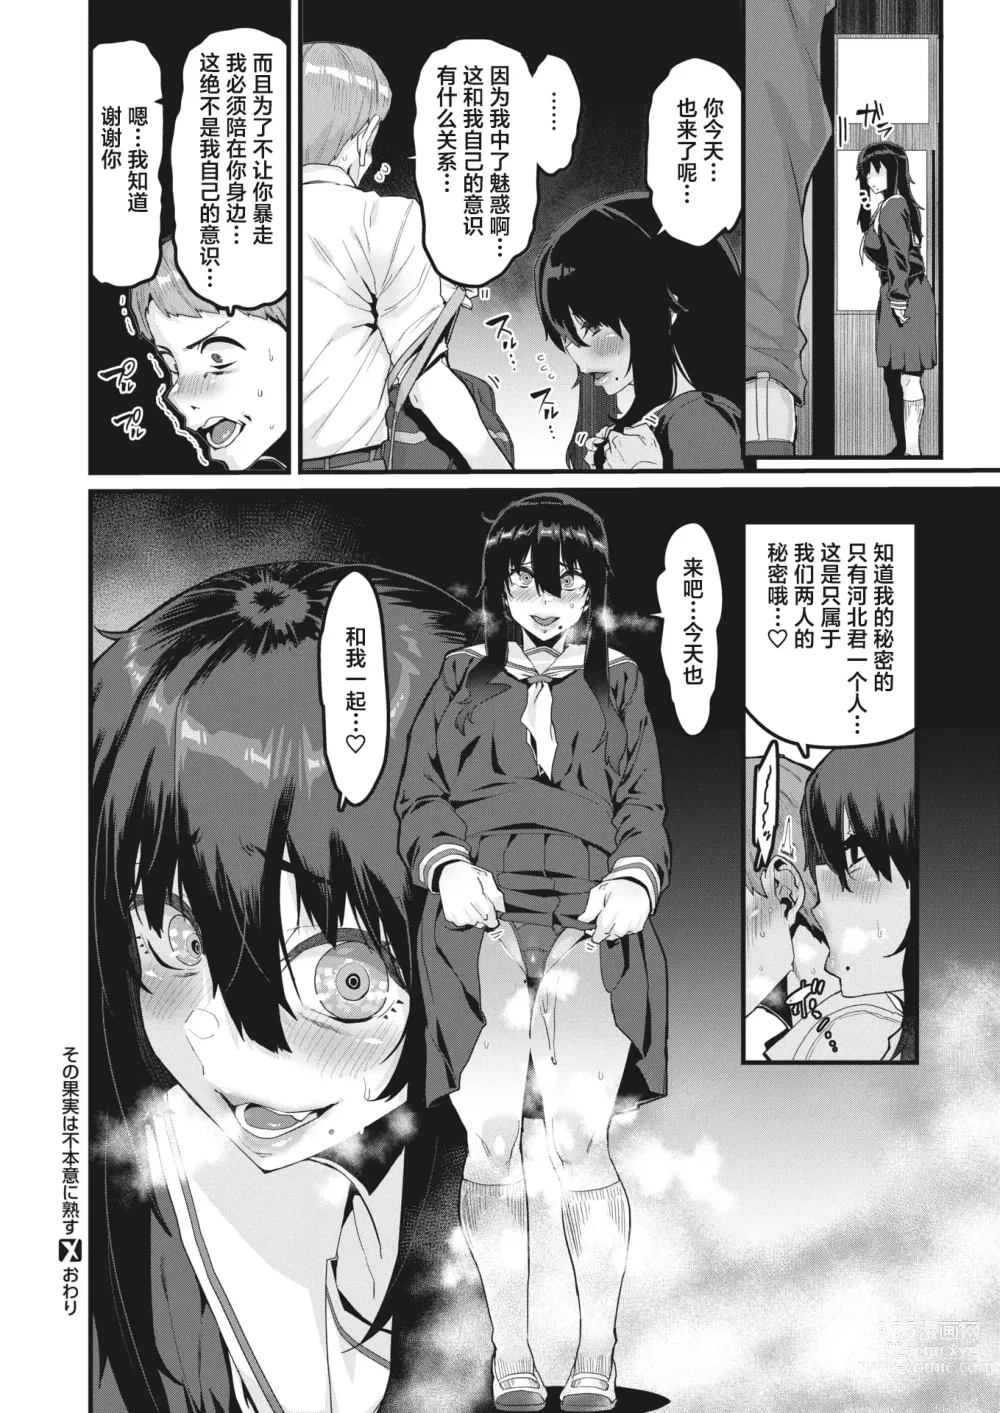 Page 33 of manga Sono Kajitsu wa Fuhoni ni Jukusu